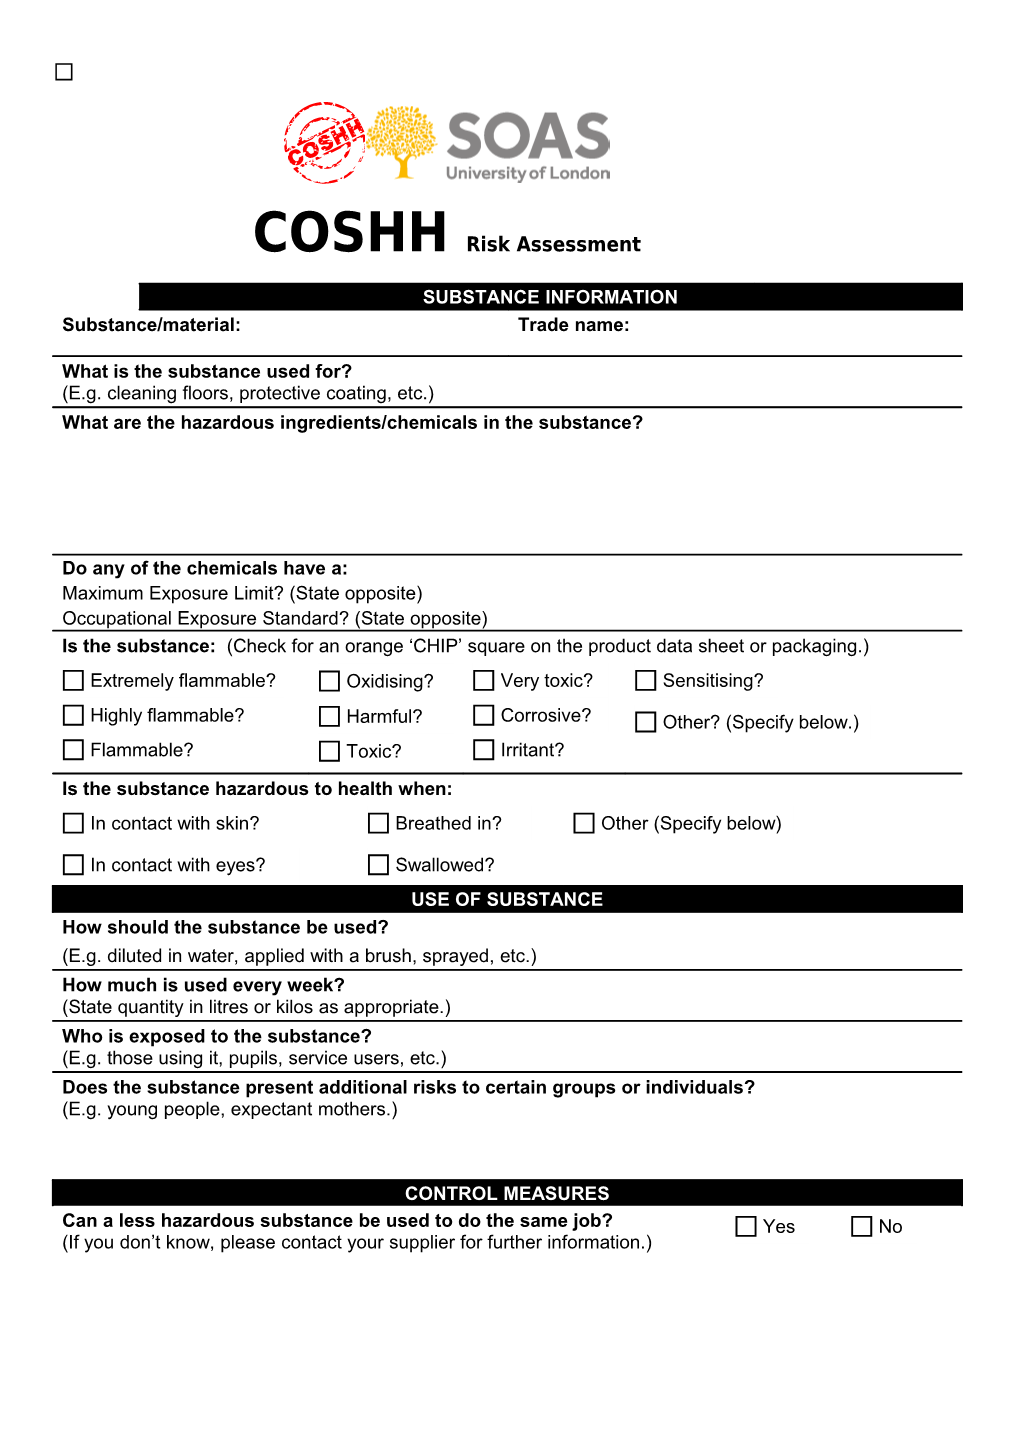 Risk Assessment Form - COSHH